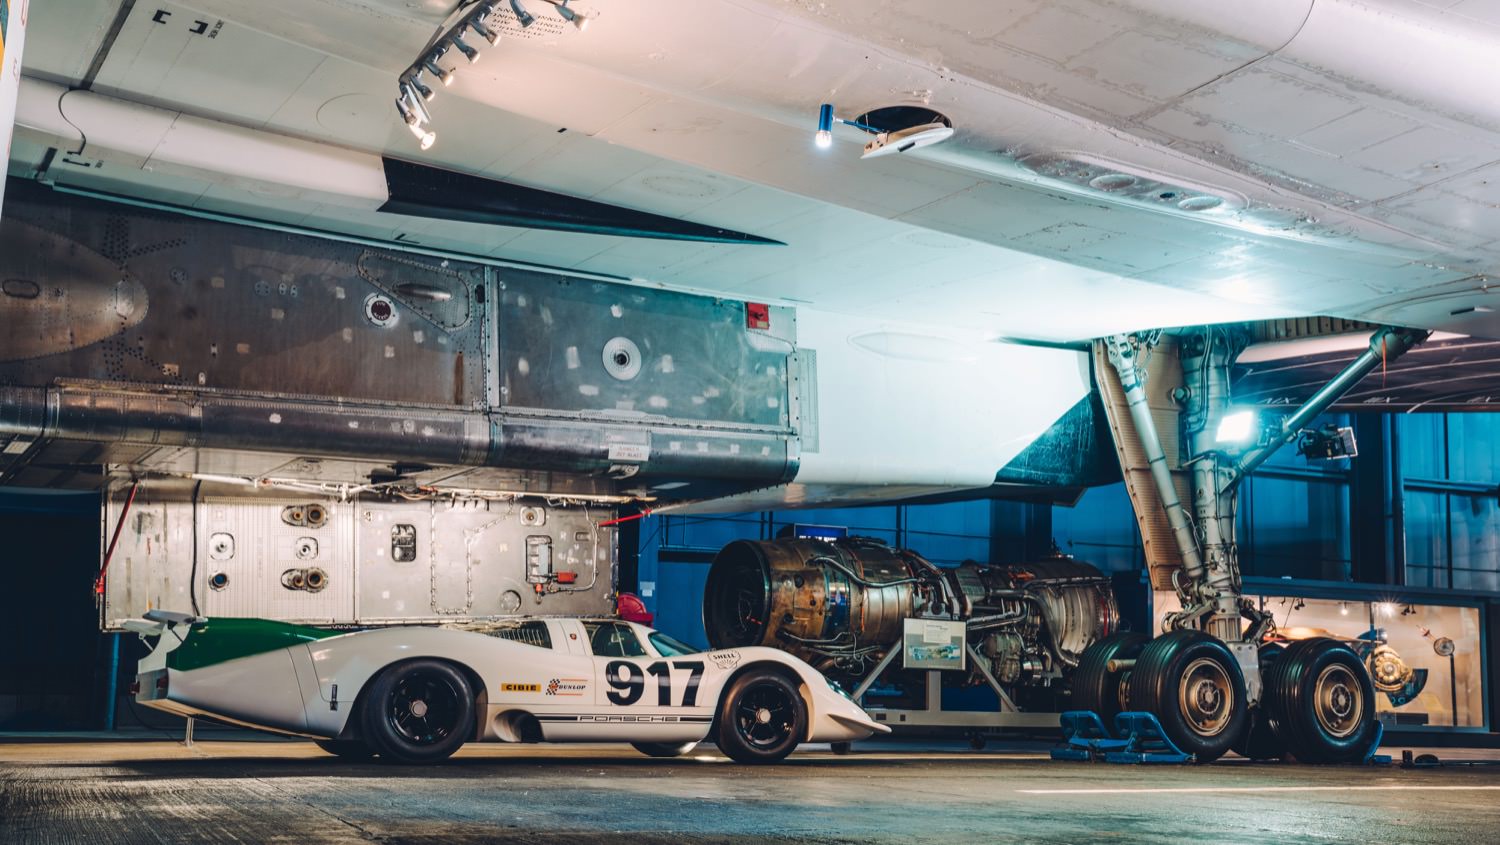 Porsche 917 under Concorde